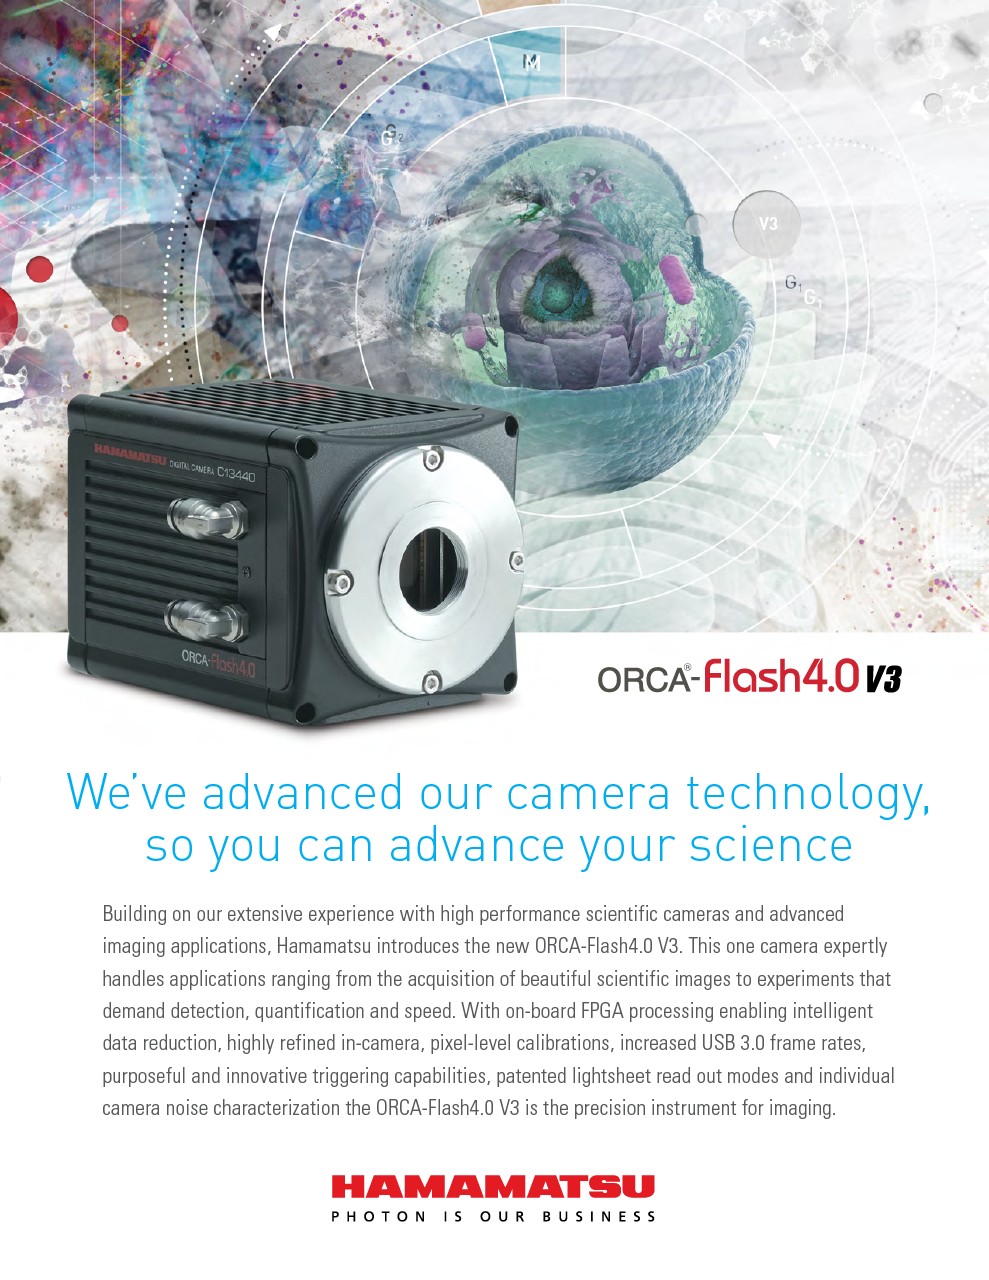 ORCA-Flash4.0 V3 Digital CMOS camera C13440-20CU for life science